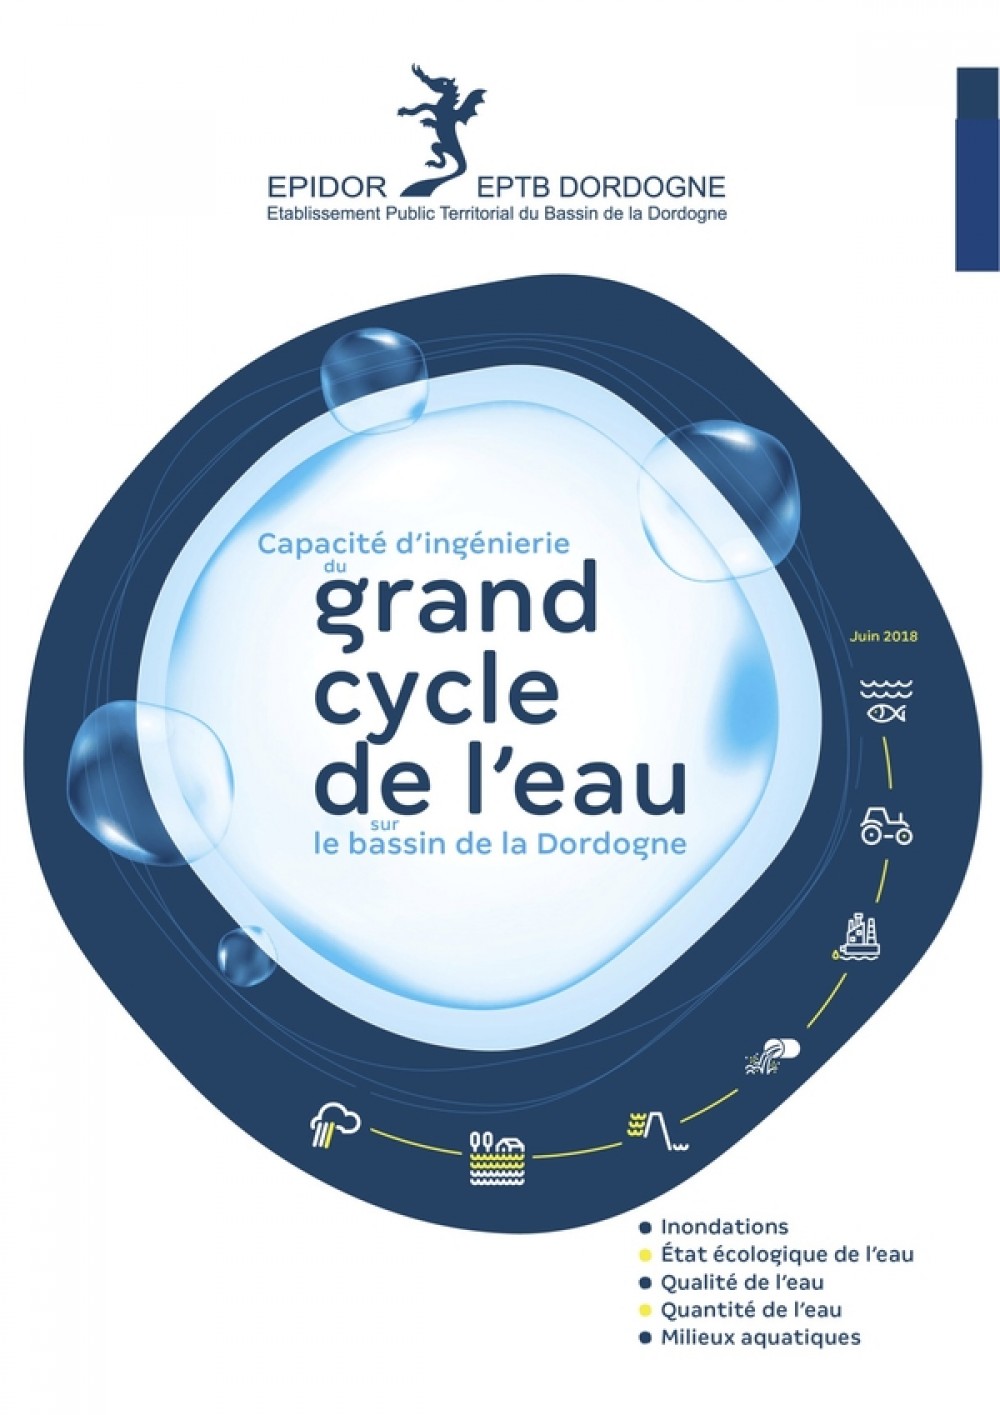 [Publication] Capacité d'ingénierie du grand cycle de l'eau sur le bassin de la Dordogne - EPIDOR